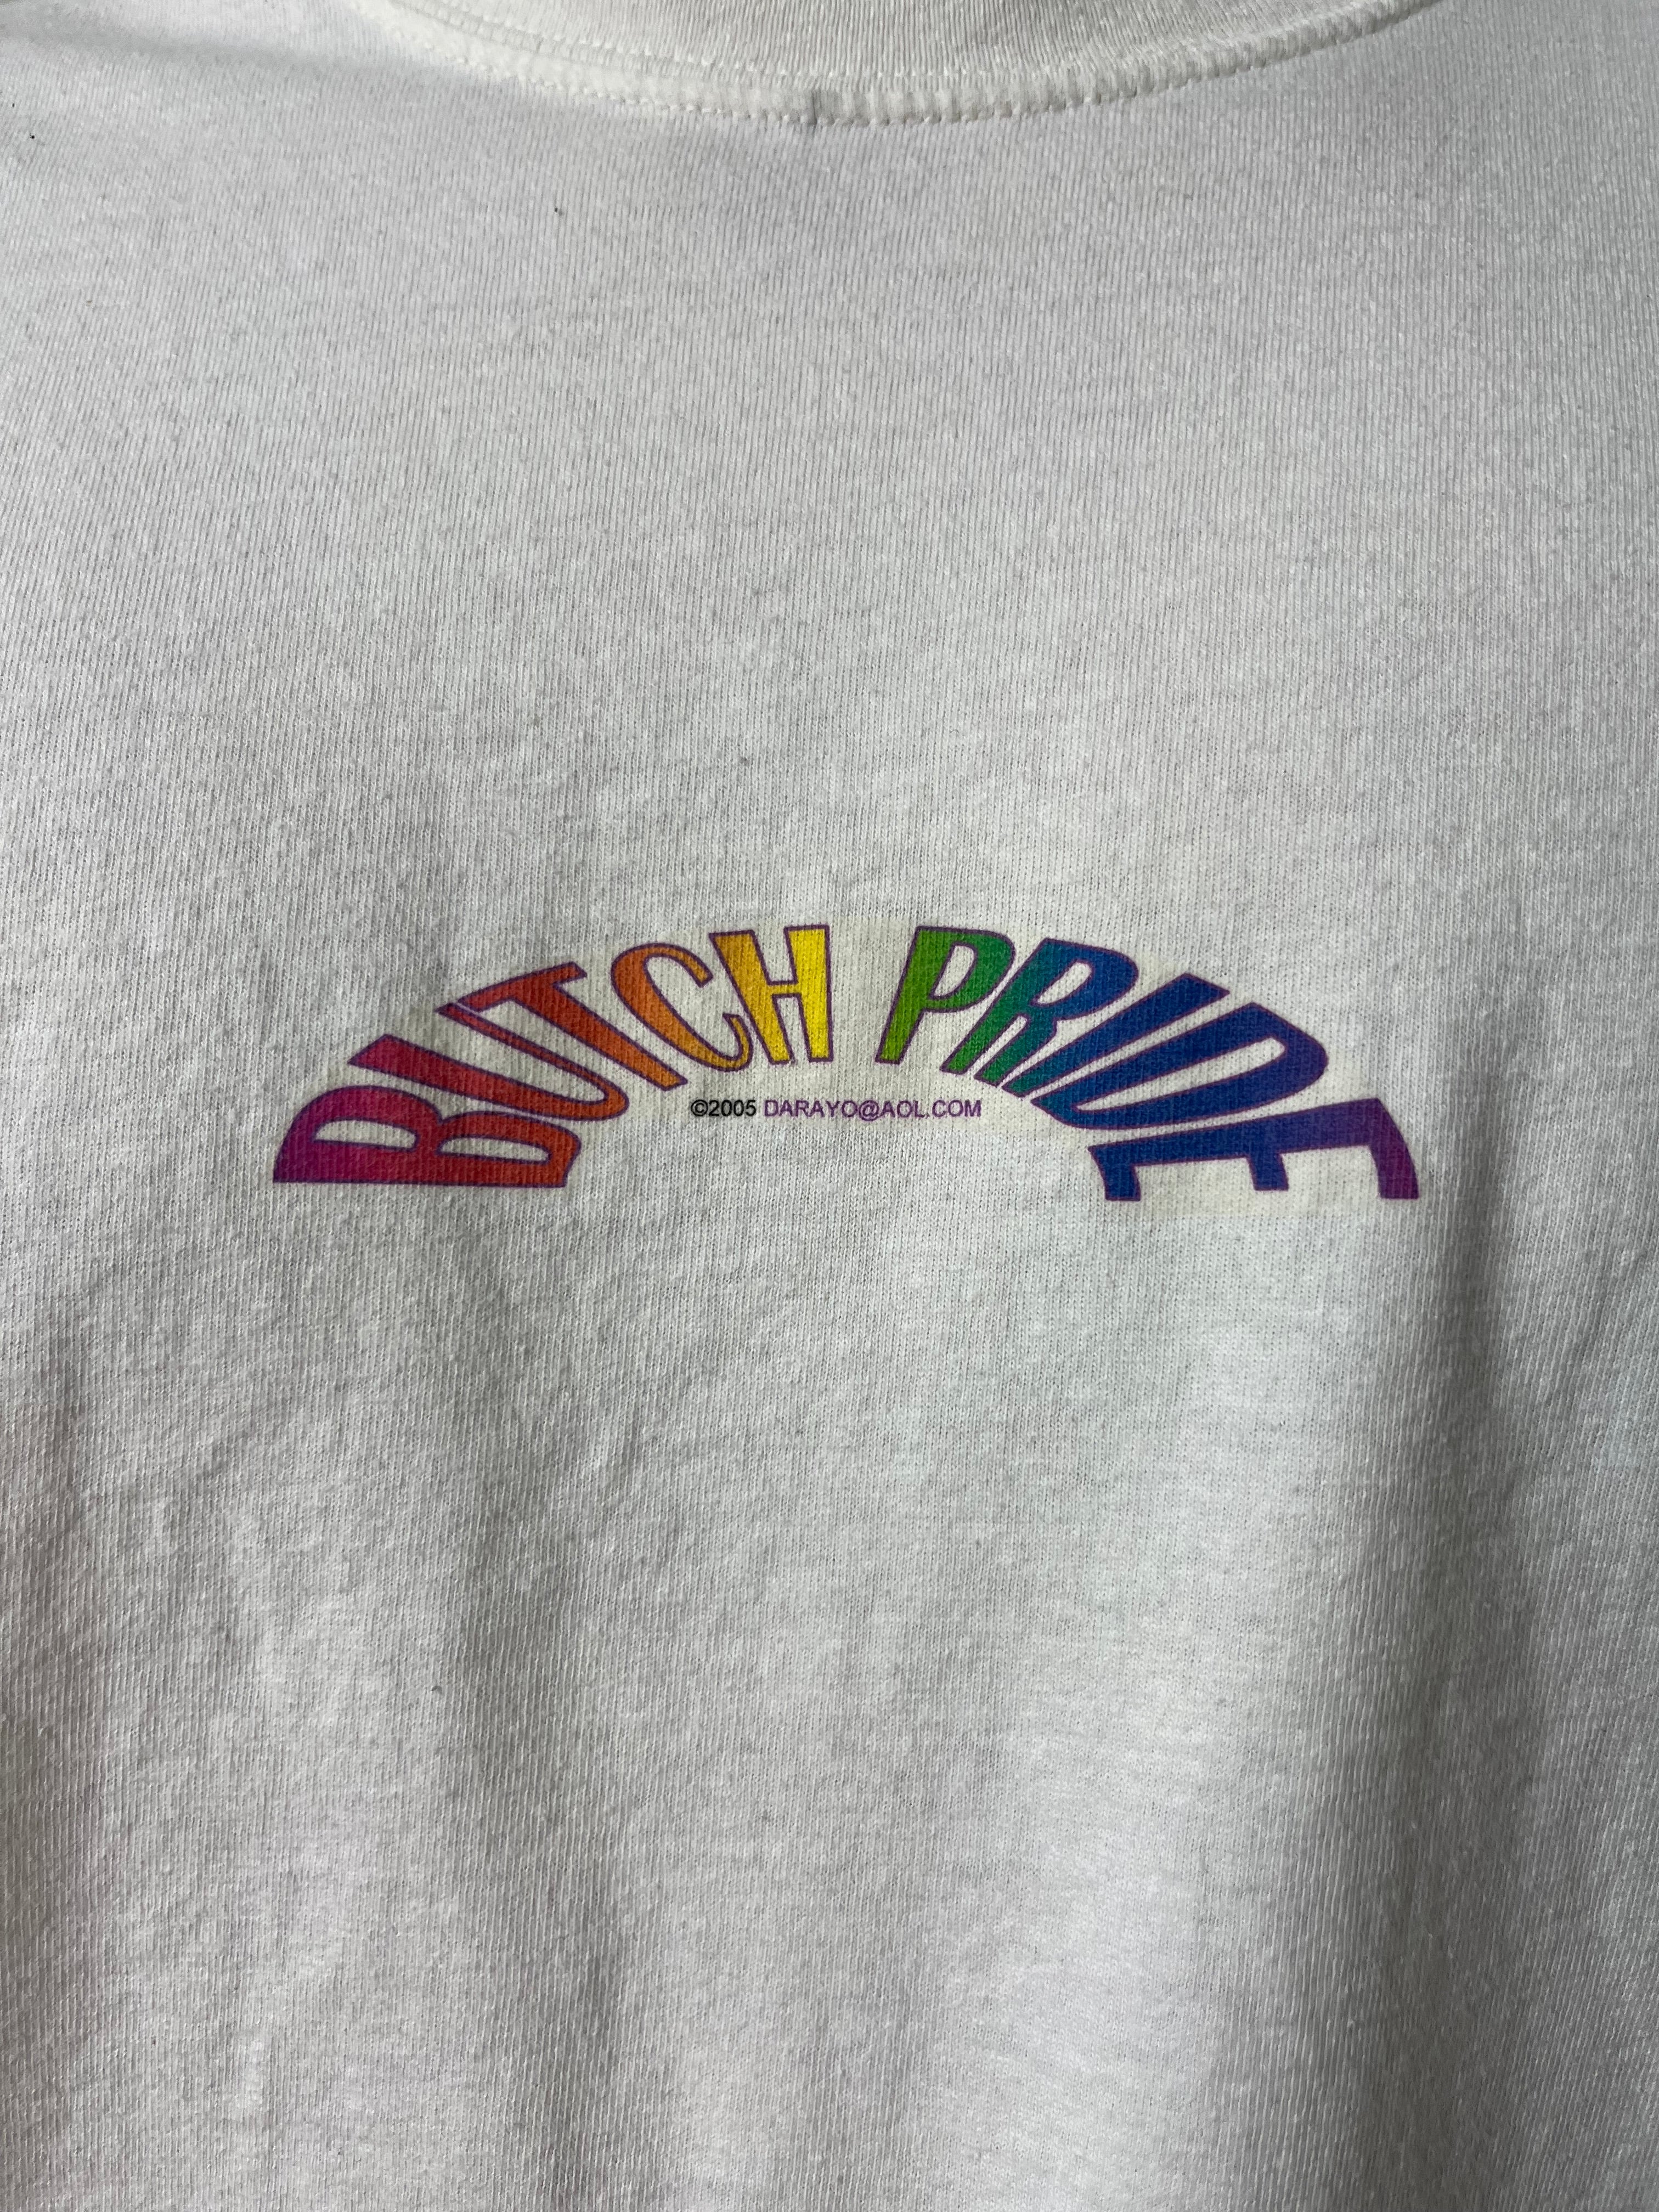 ‘05 Butch Pride T-Shirt - White - L/XL